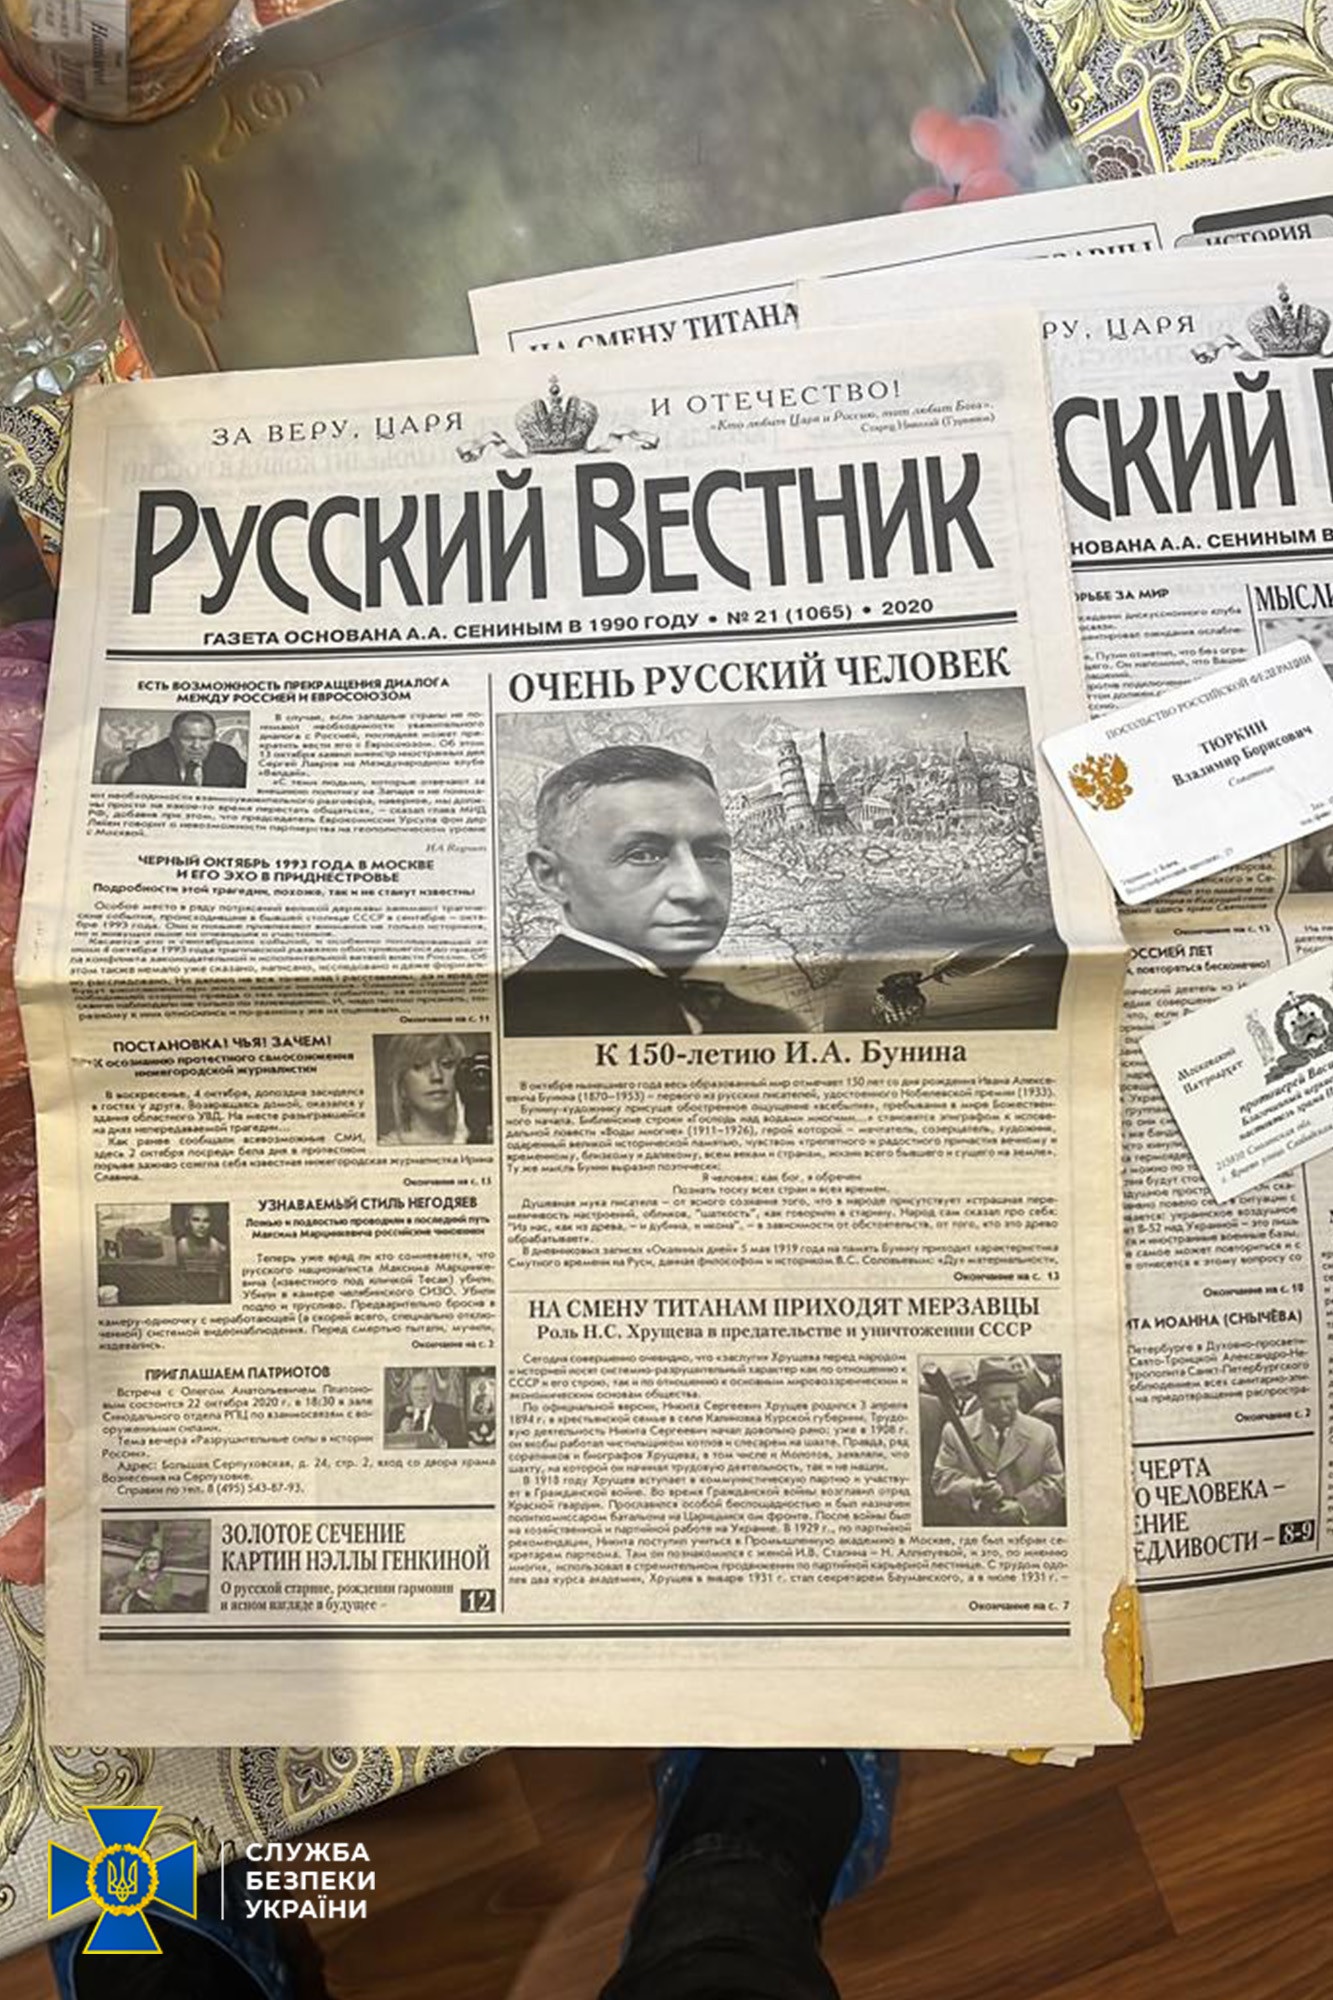 СБУ: в УПЦ найдены россияне, литература за РФ, масса денег